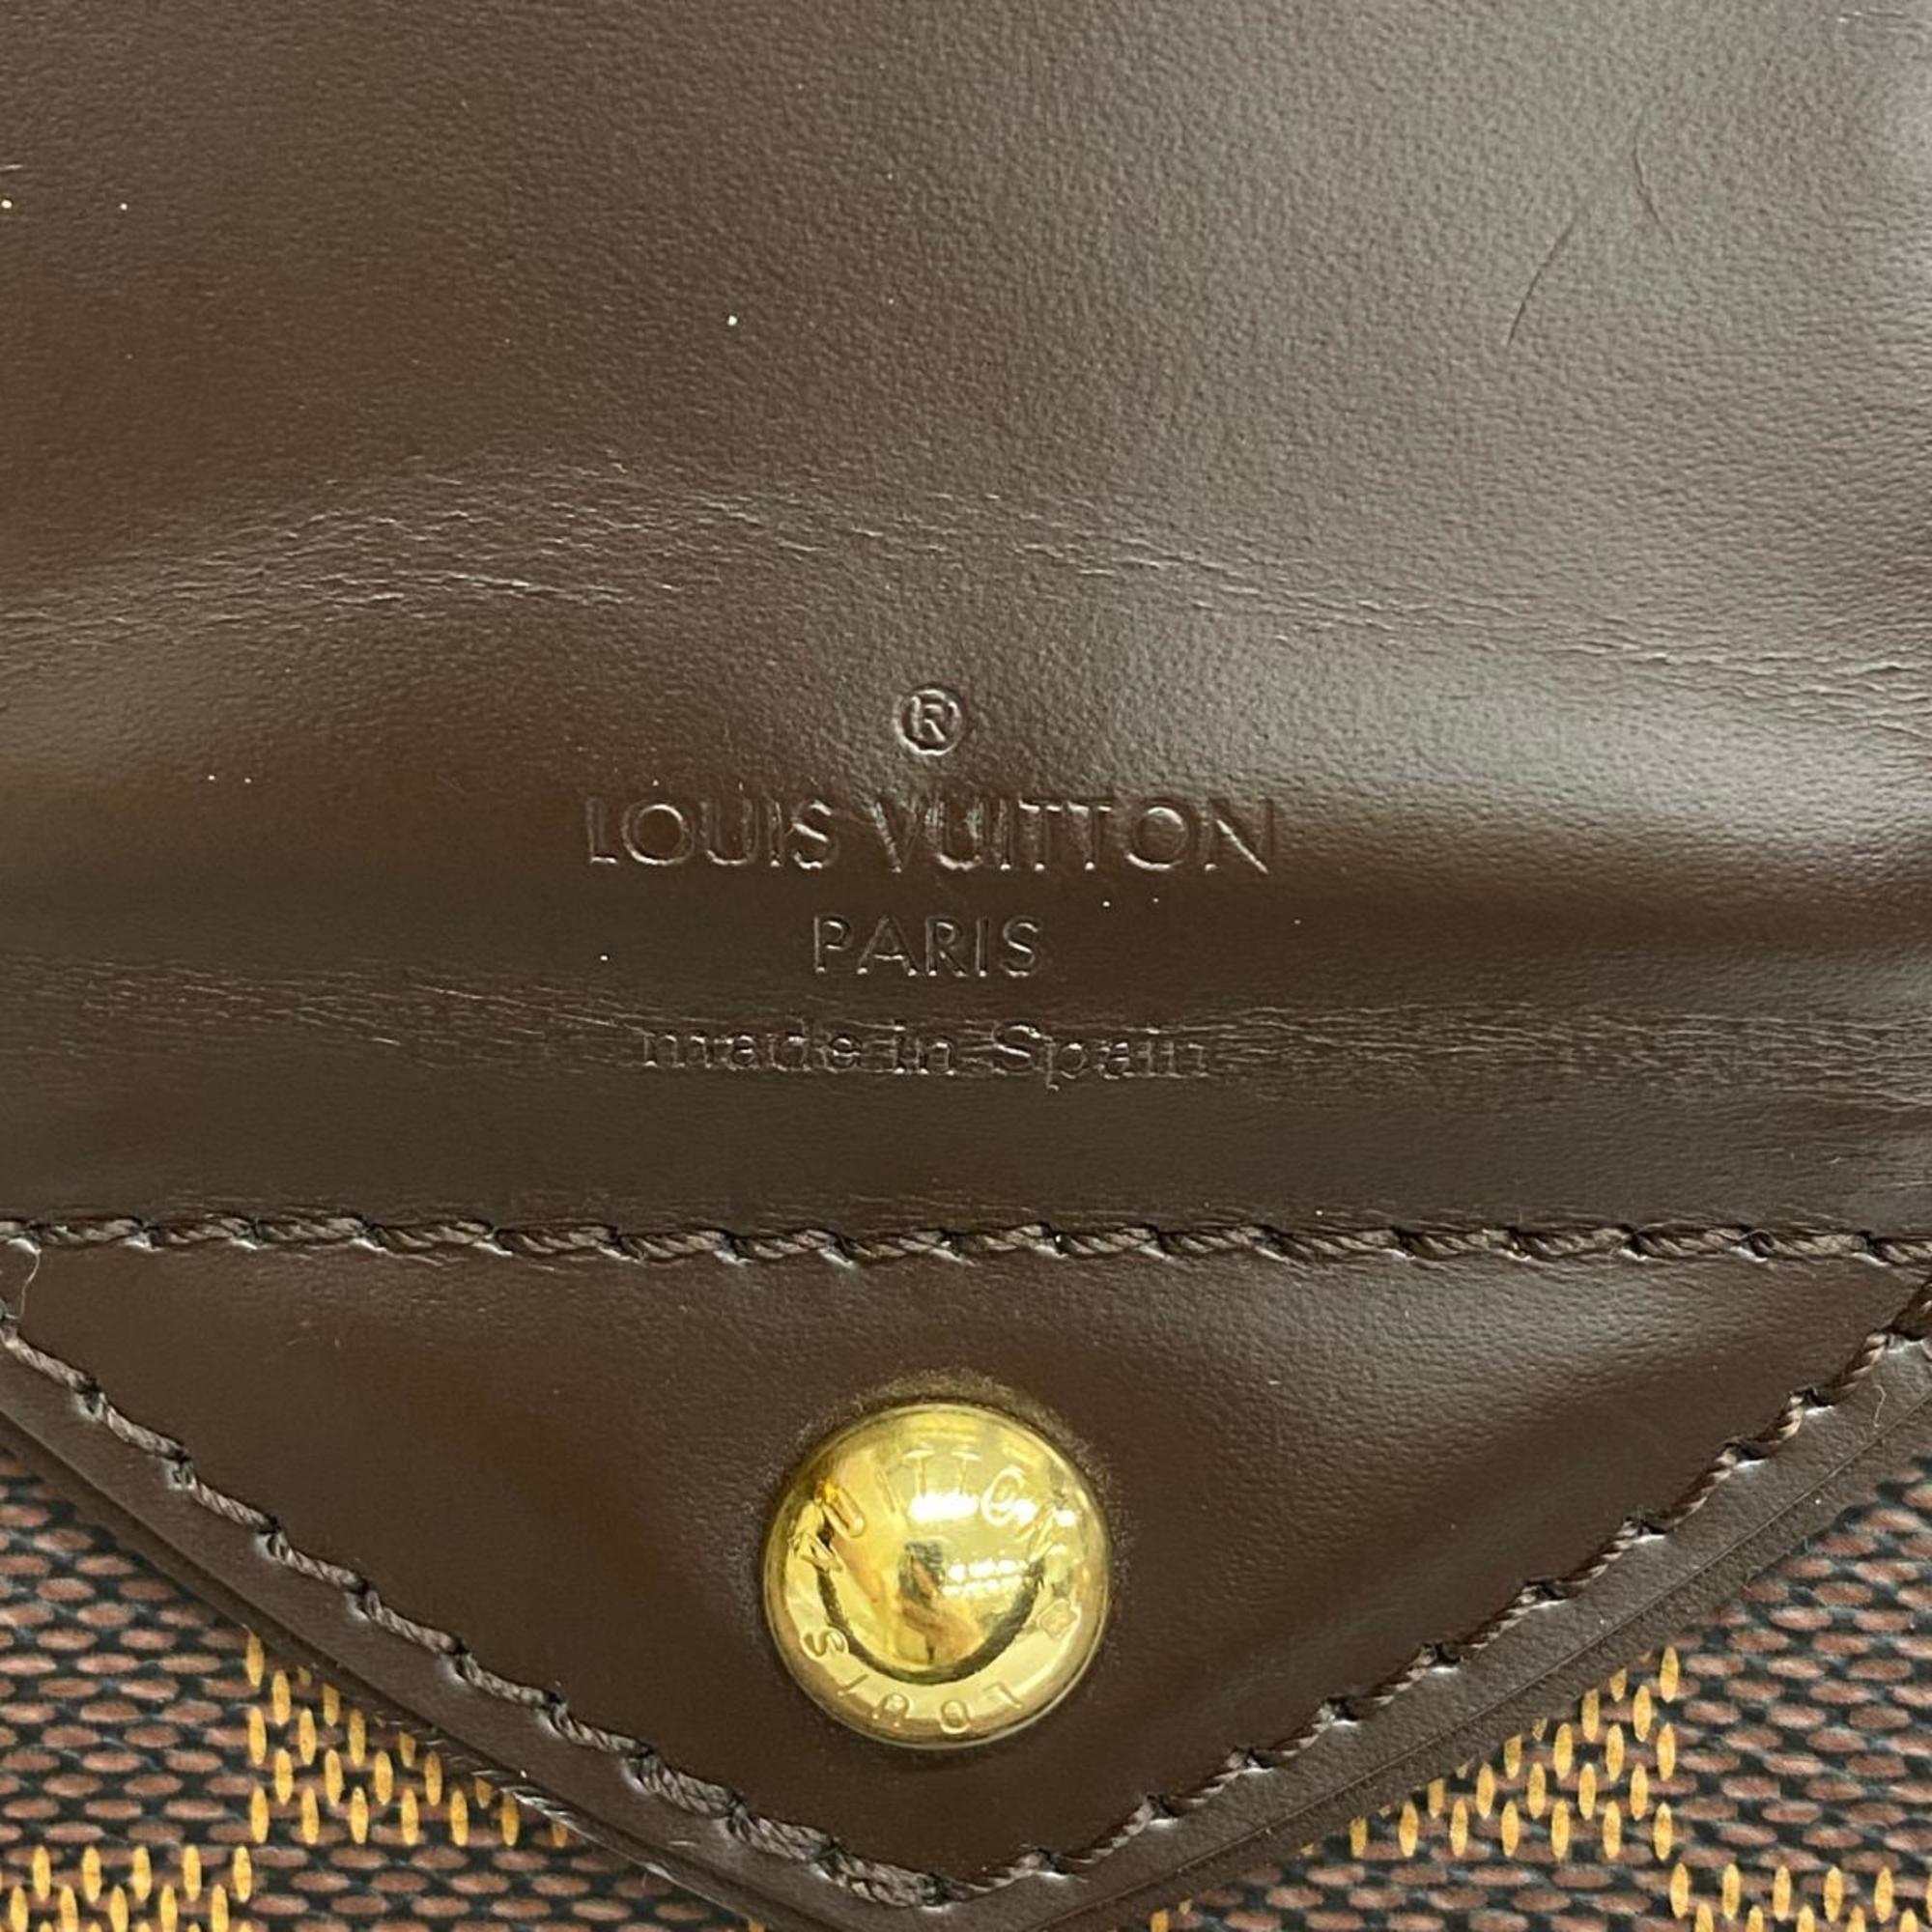 ルイ・ヴィトン(Louis Vuitton) ルイ・ヴィトン ショルダーバッグ ダミエ システィナGM N41540 エベヌレディース